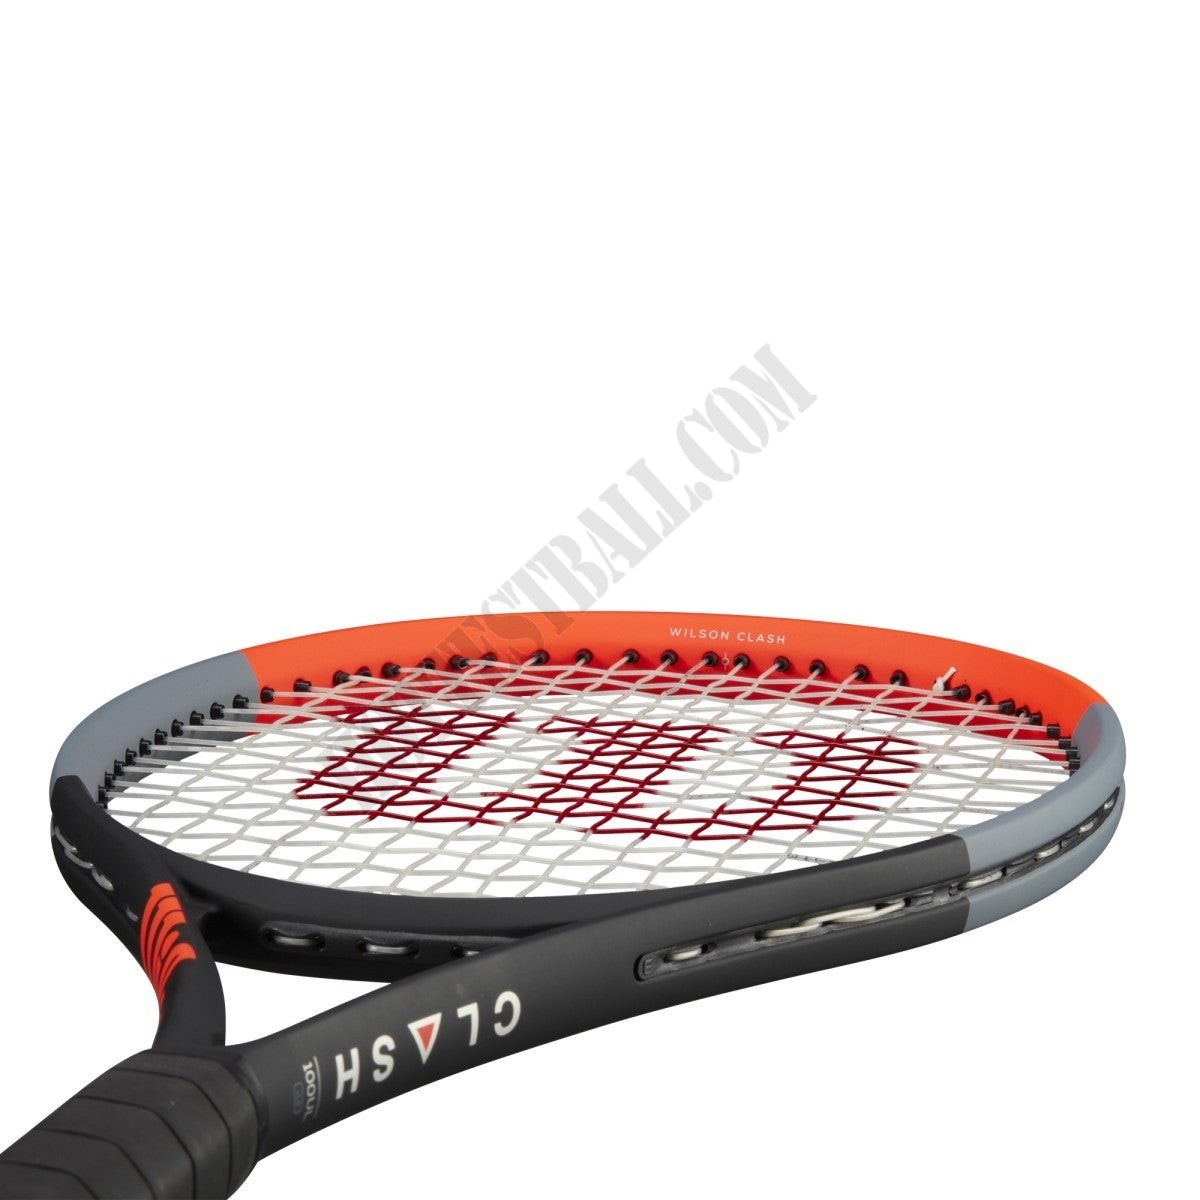 Clash 100UL Tennis Racket - Wilson Discount Store - -5